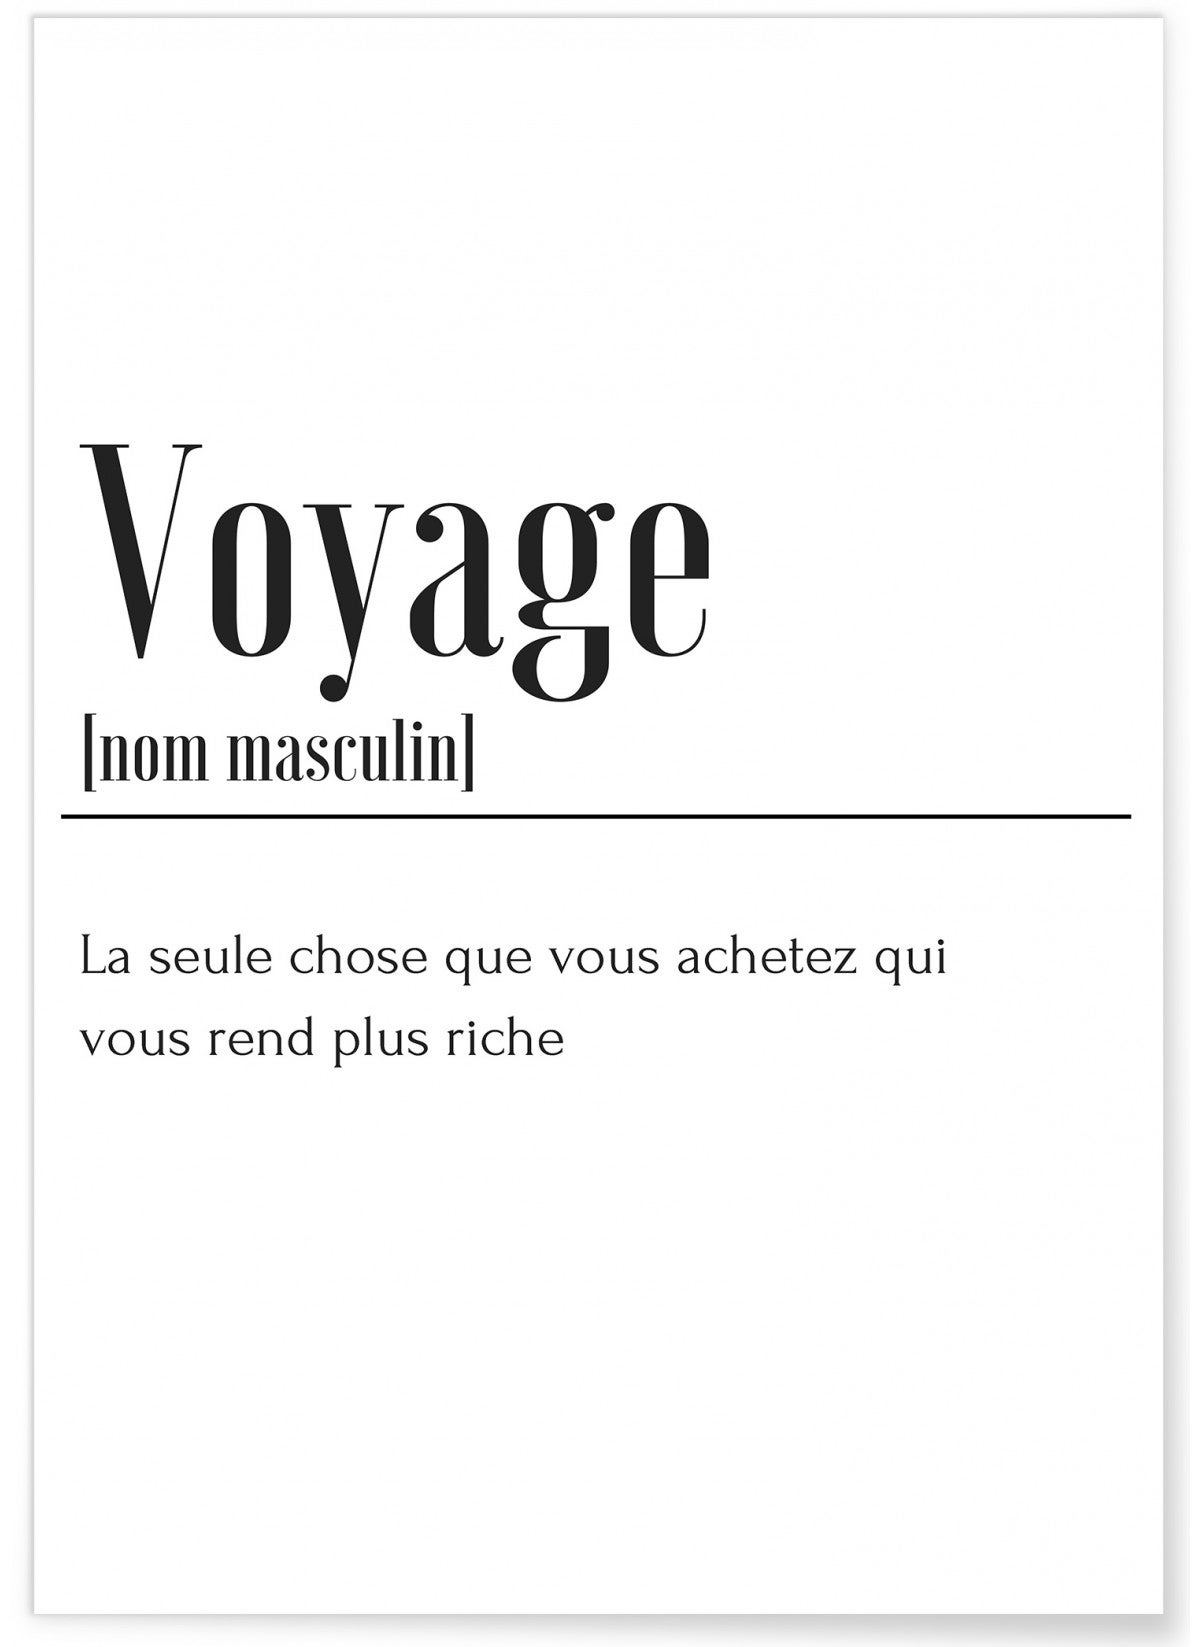 voyage ki definition